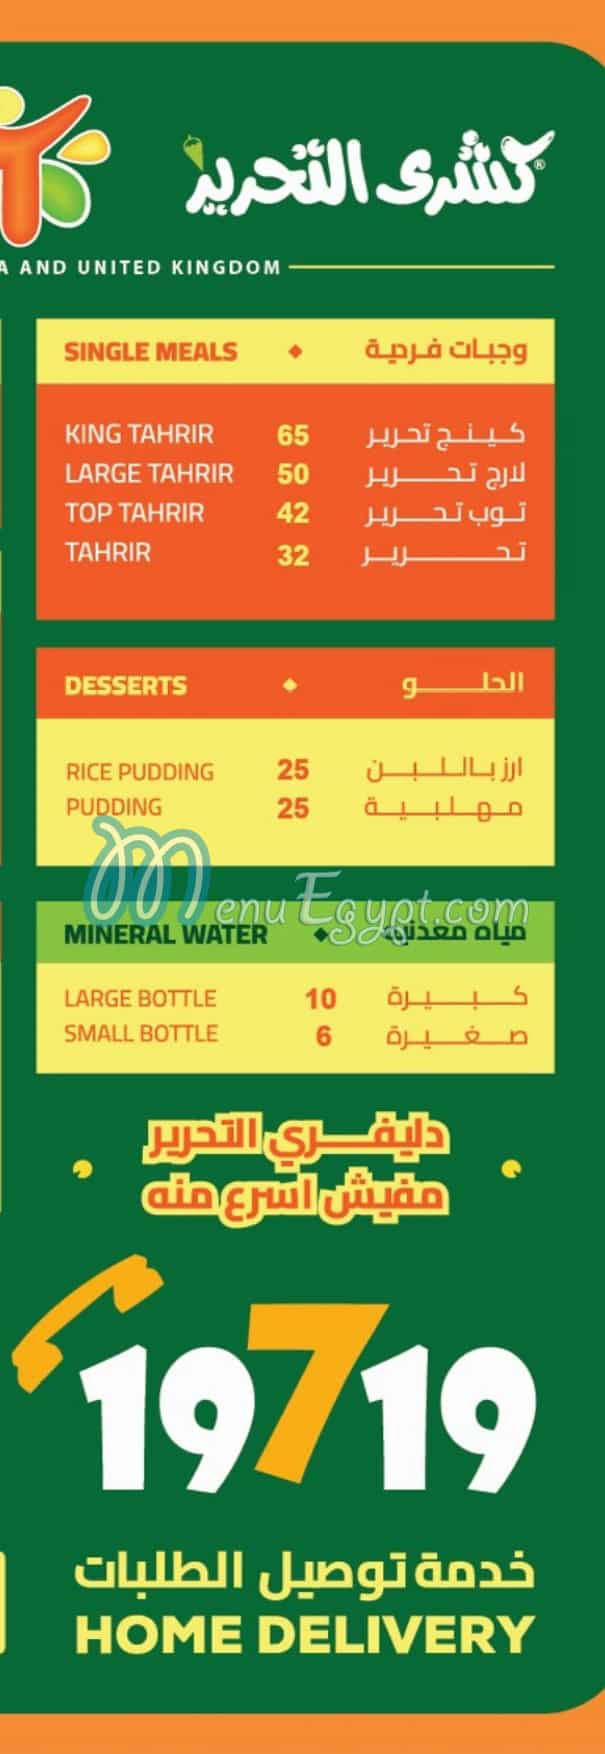 Koshary El Tahrir menu